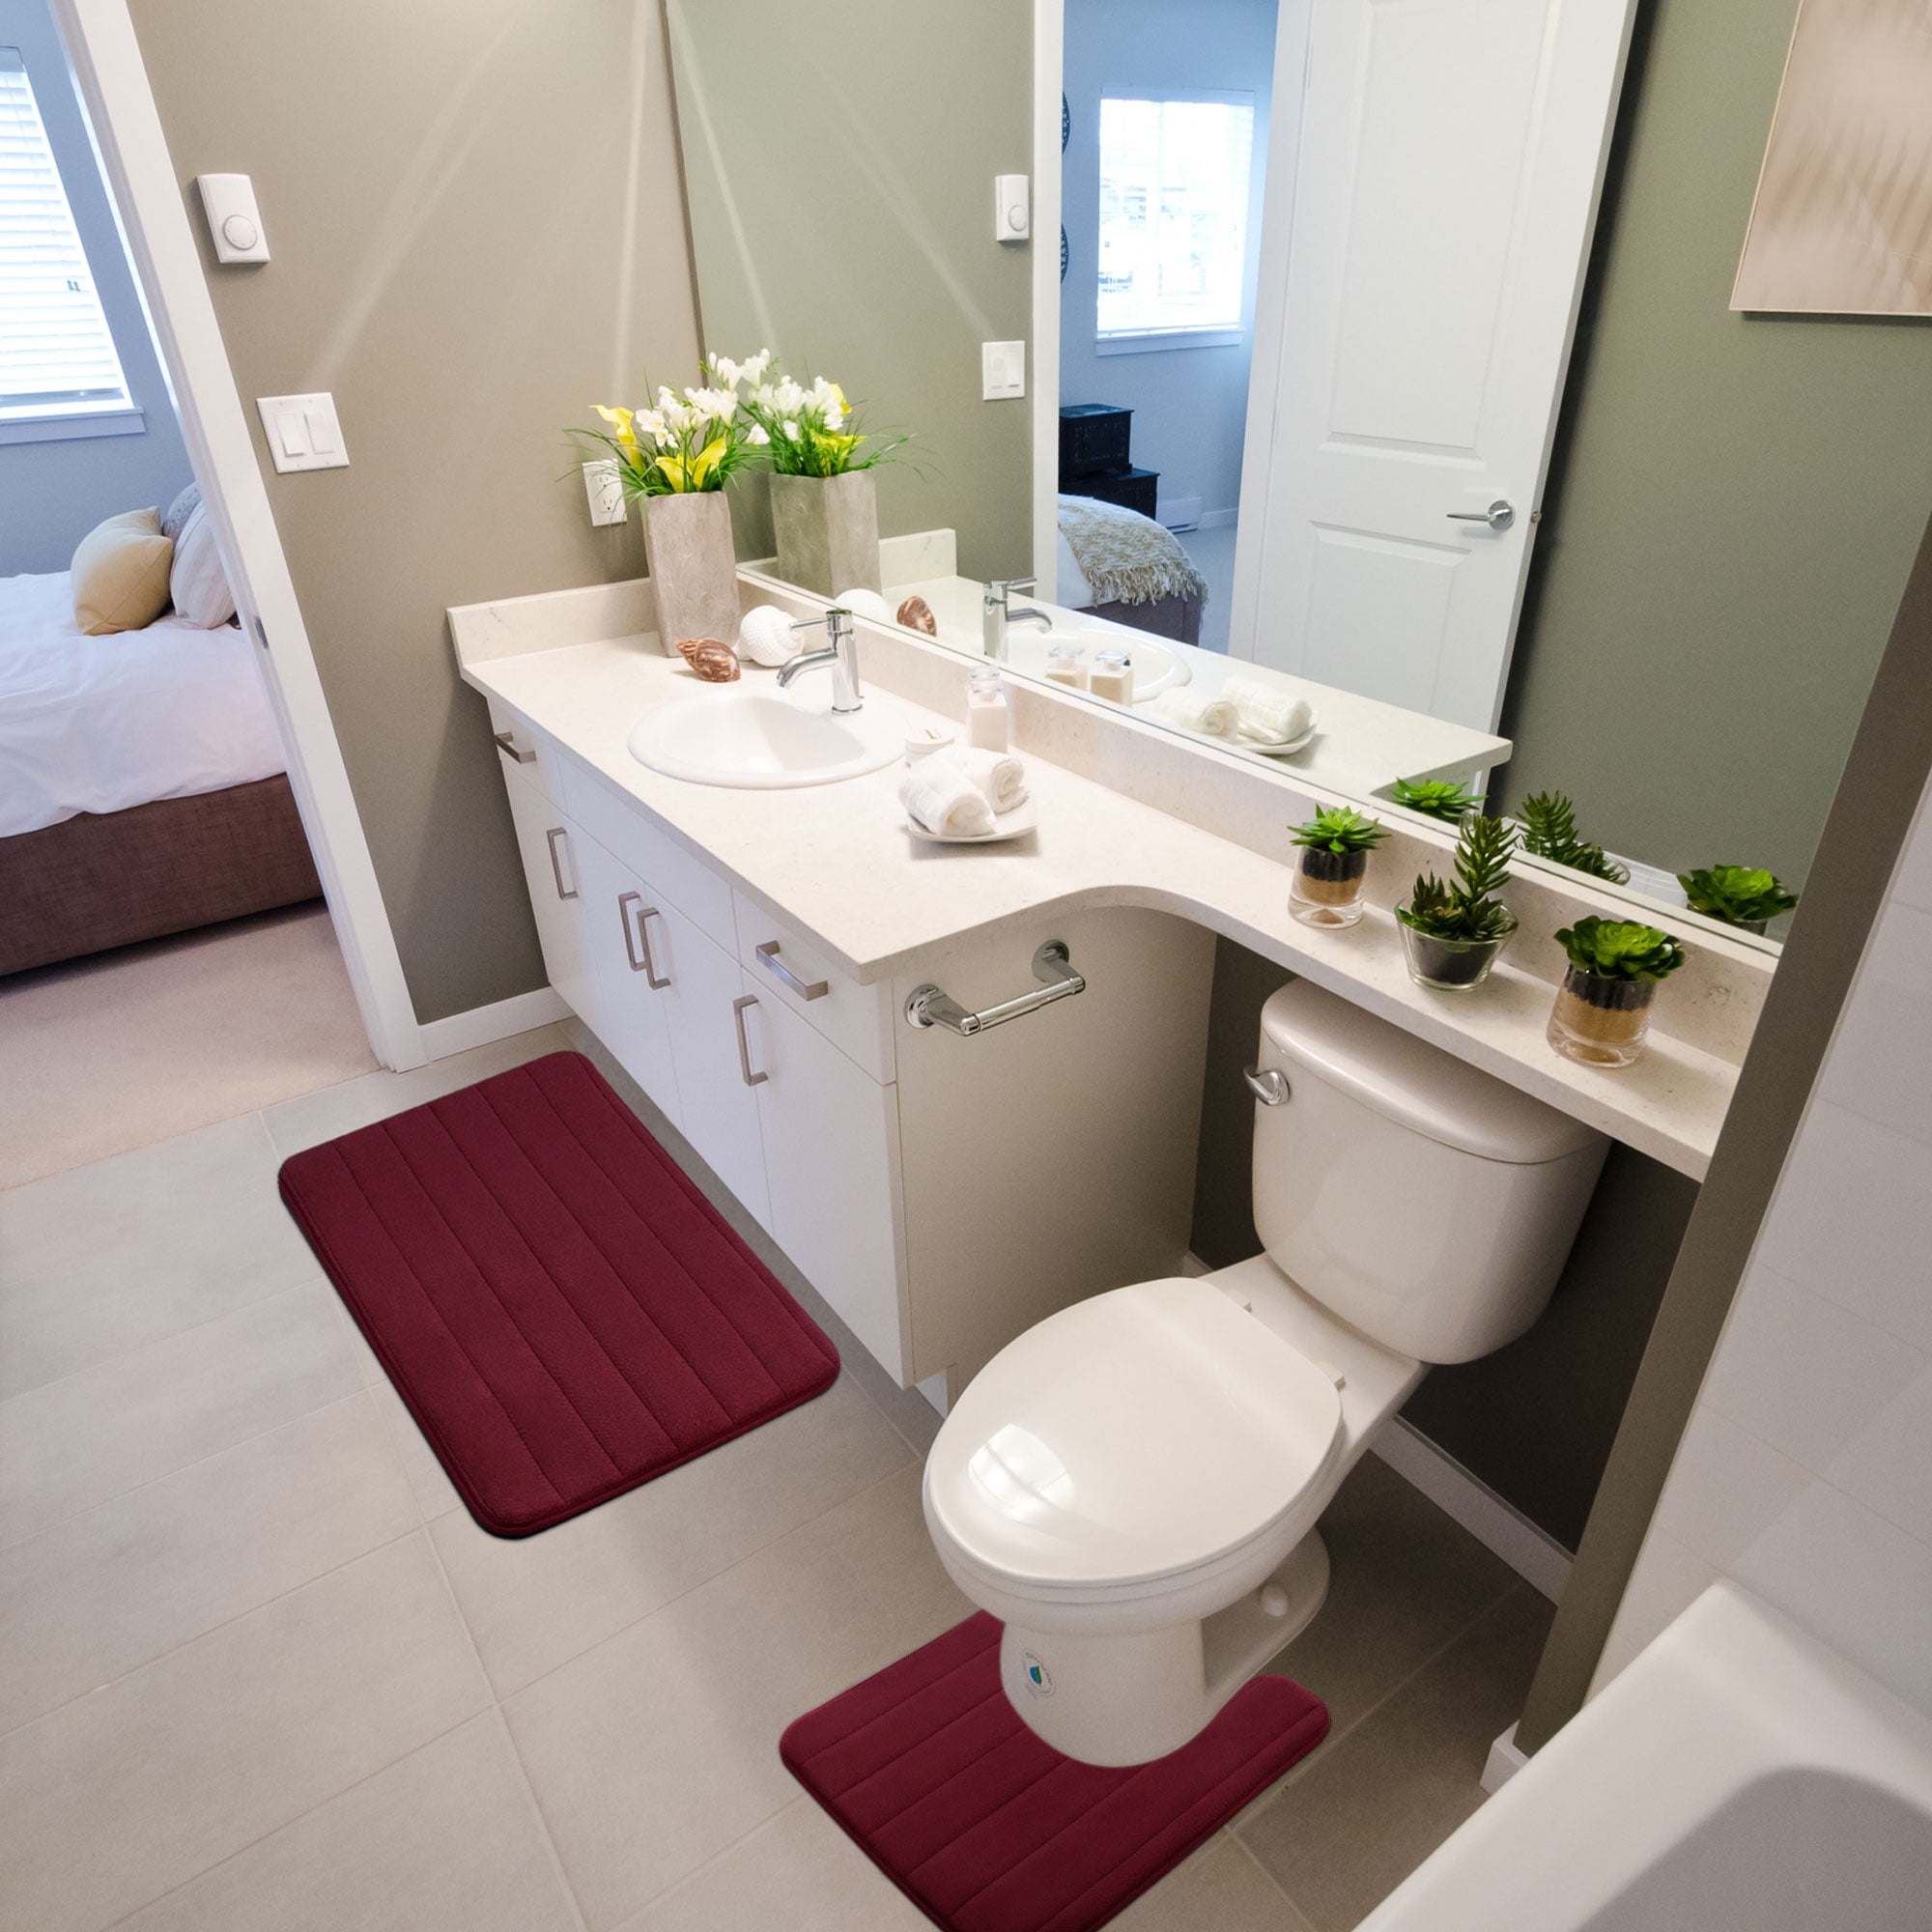 Details about   ZERO TWIST BATH MAT SET Pedestal Non Slip Super Soft Toilet Bathroom Rugs 2pcs 